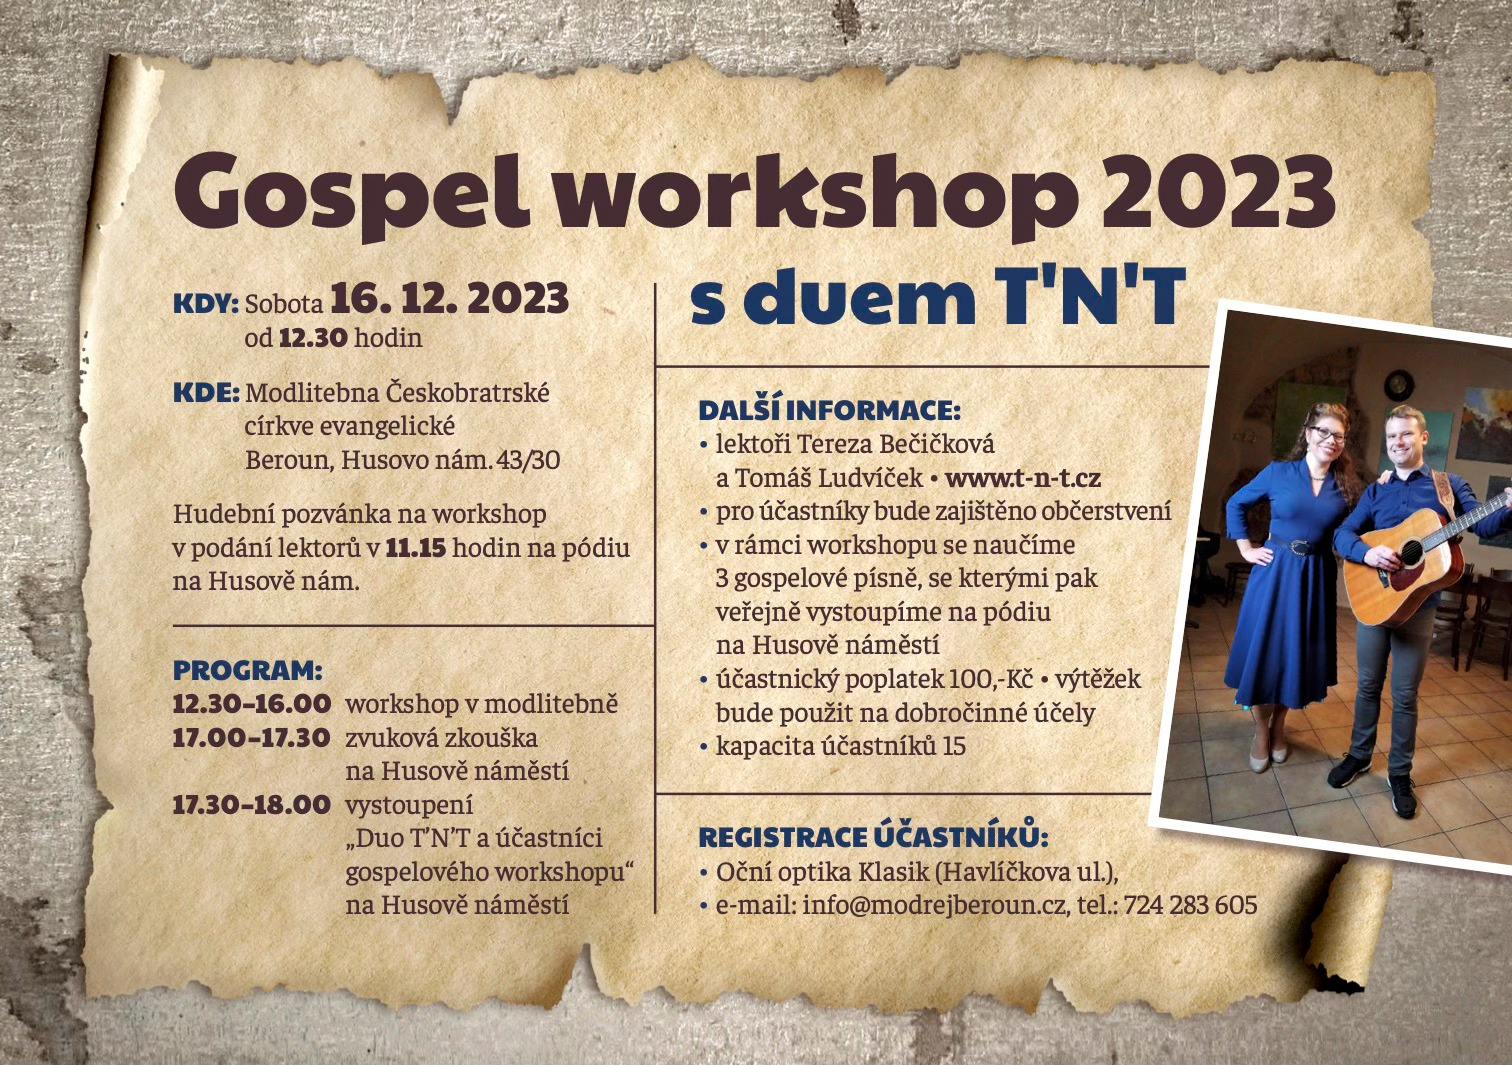 16. prosince 2023 (sobota) od 17.30h, Beroun - gospelový workshop